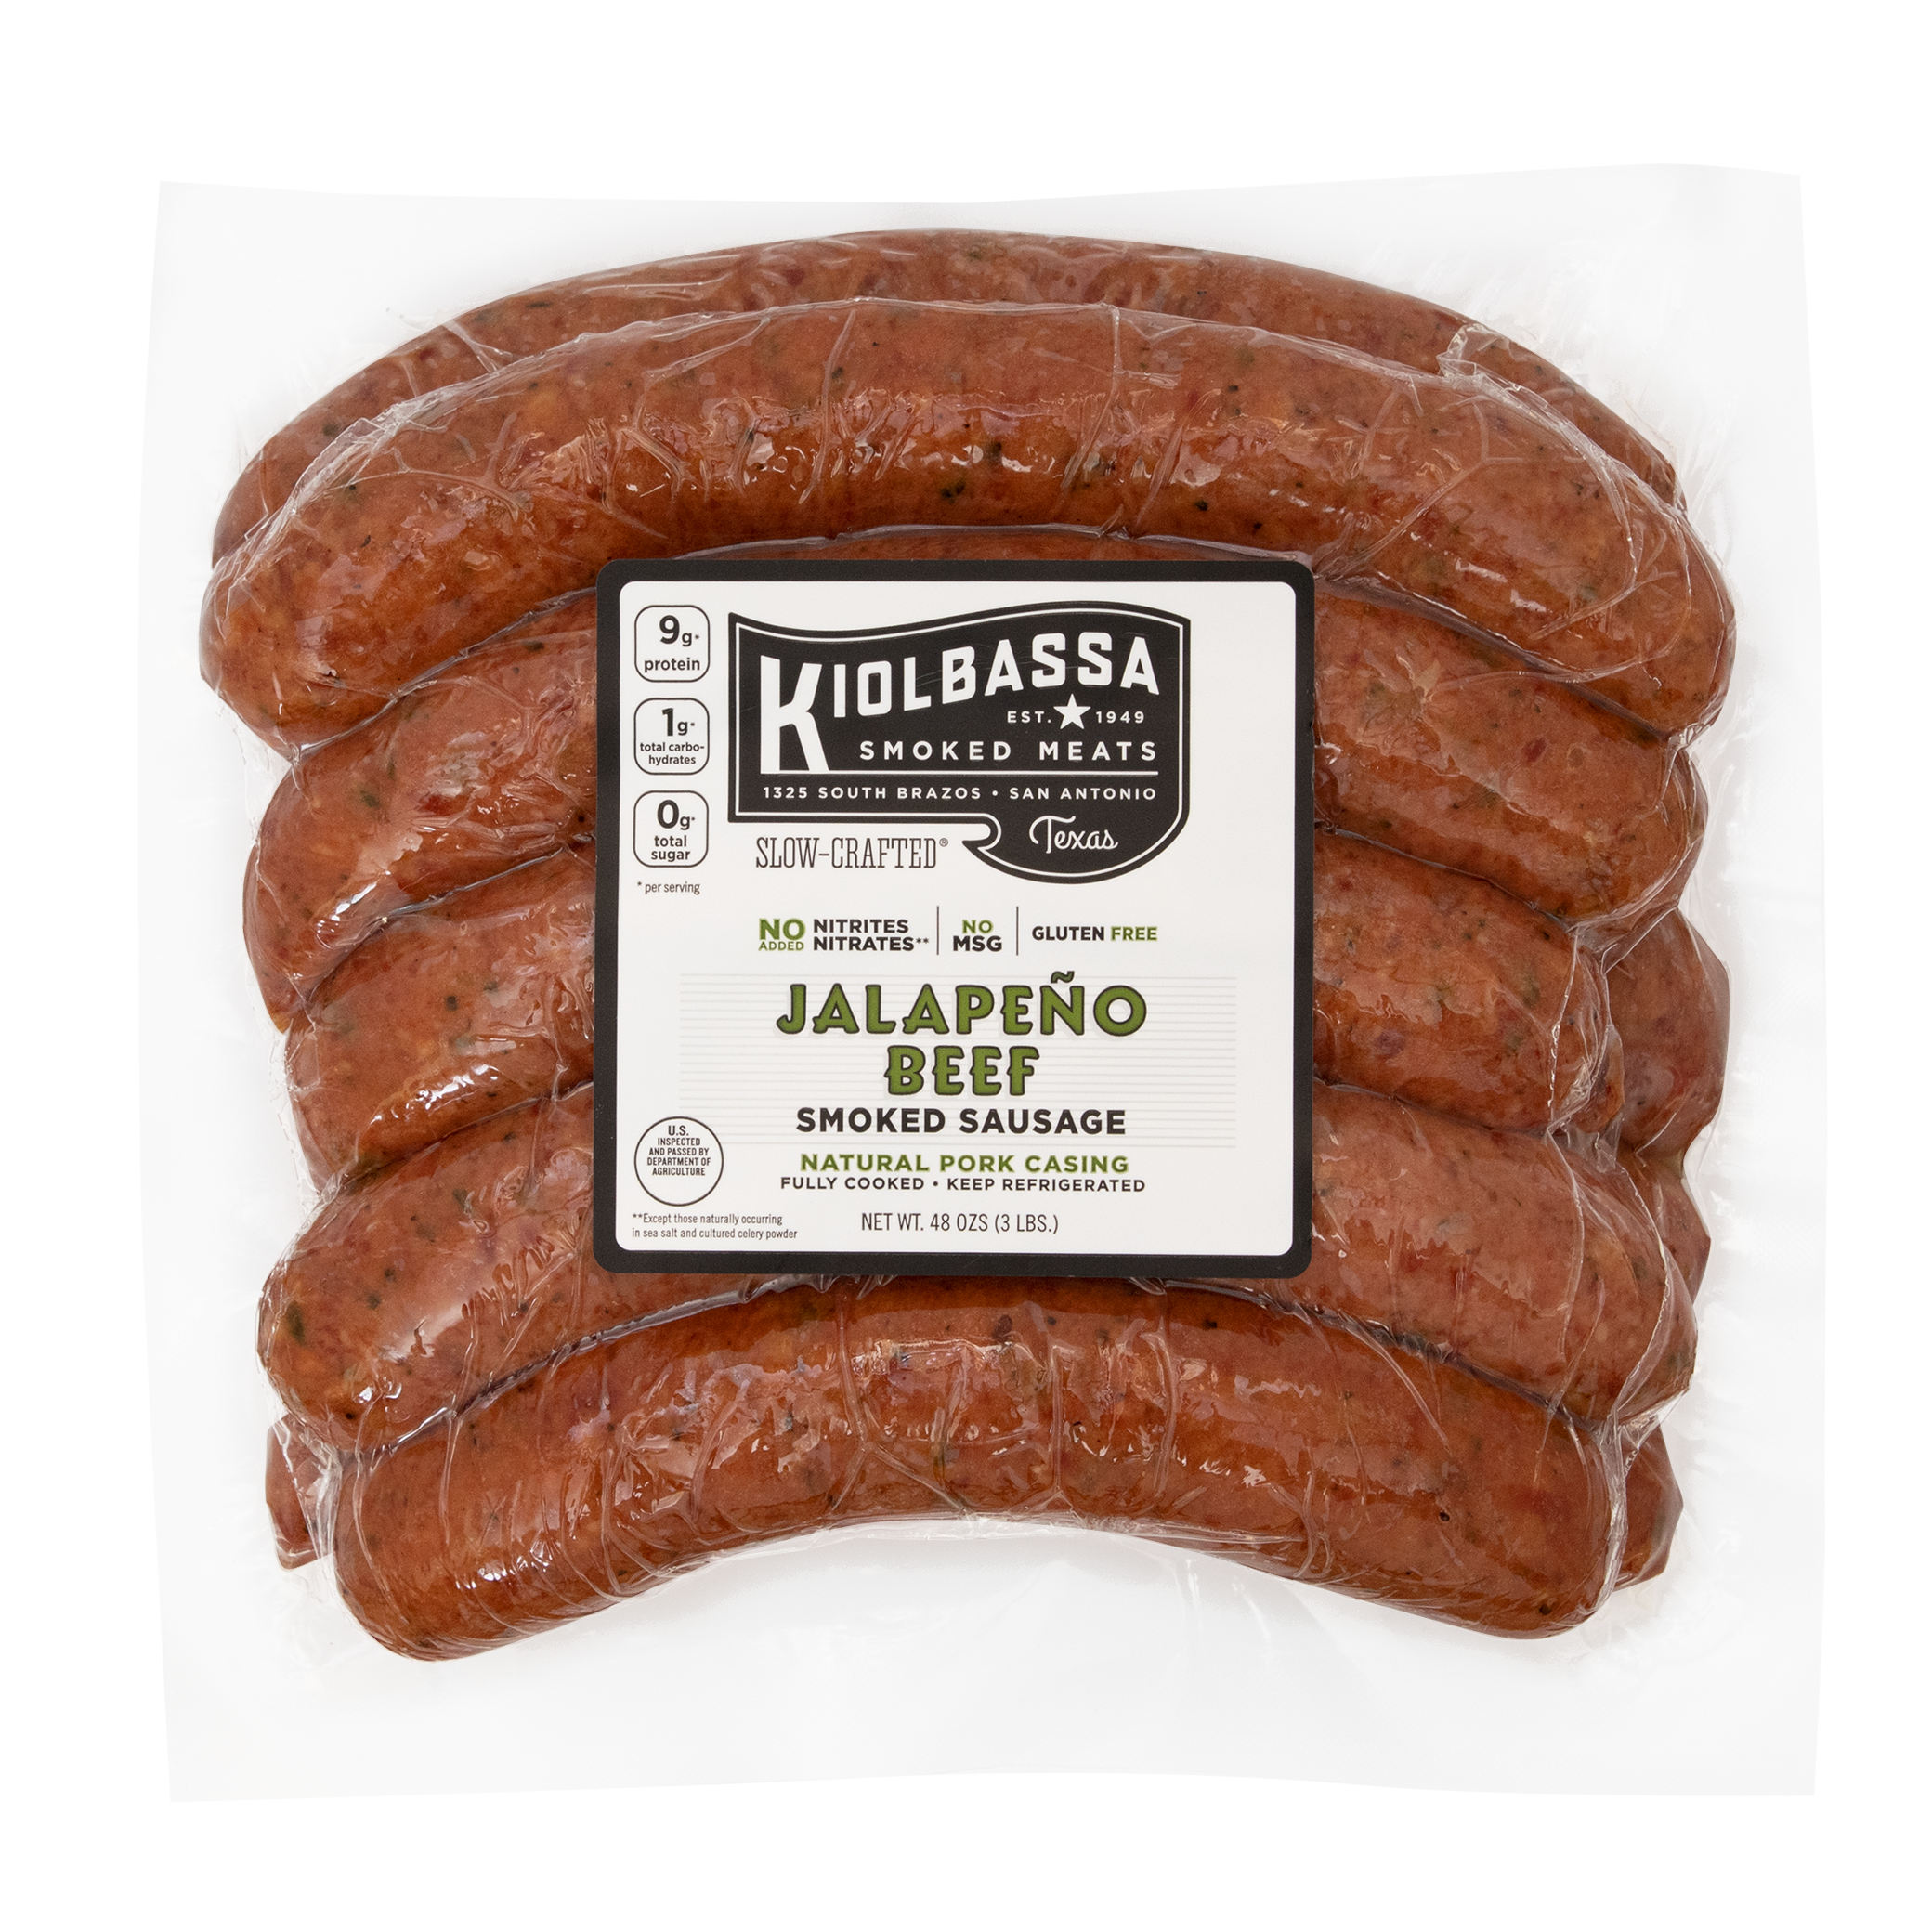 Jalapeno Beef Smoked Sausage